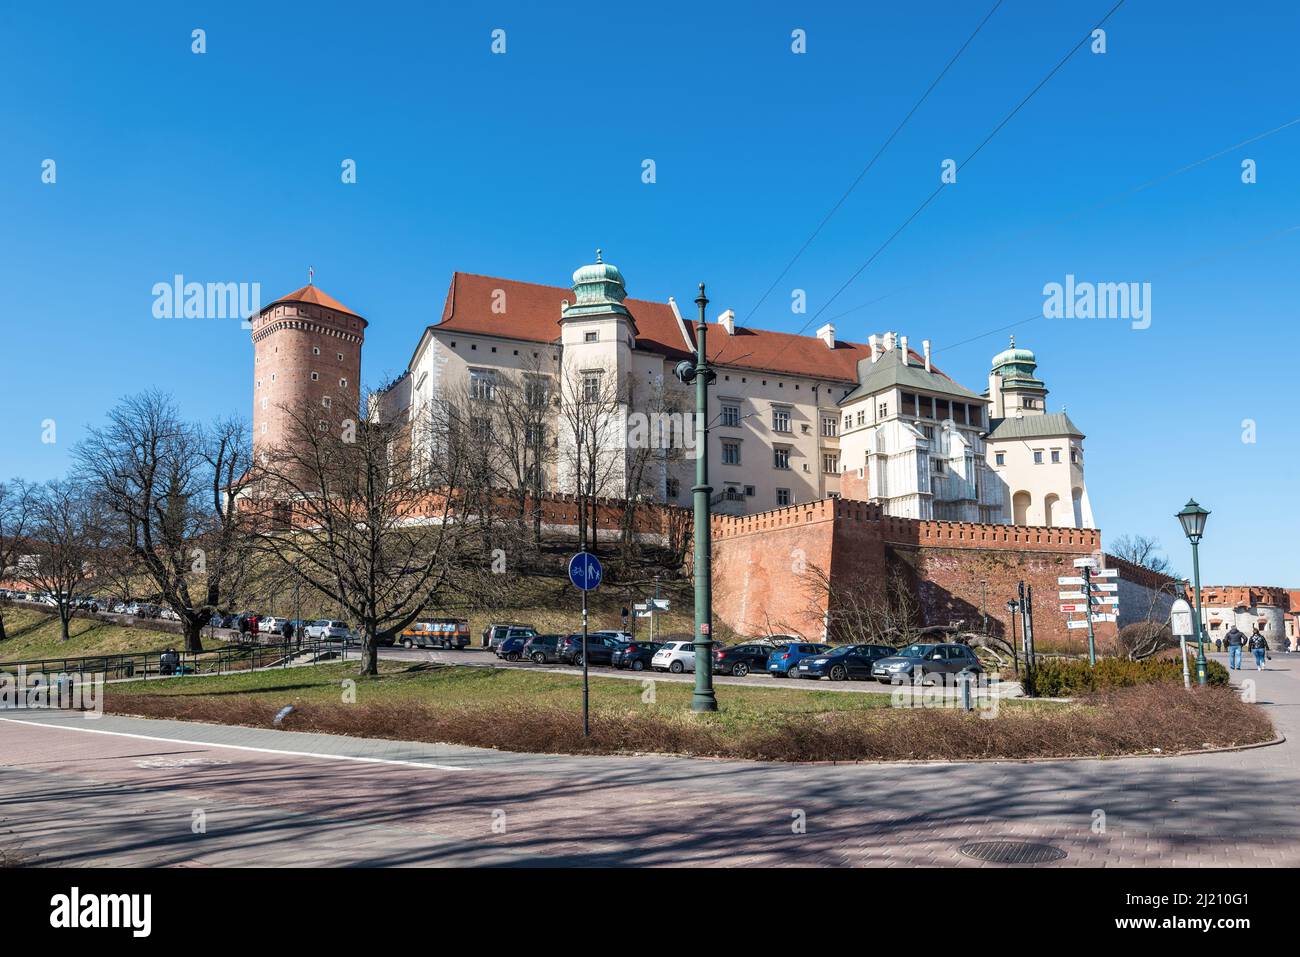 Cracovia, Polonia - 11 marzo 2022: Vista sul Castello reale medievale di Wawel, il primo sito patrimonio mondiale dell'UNESCO al mondo. Foto Stock